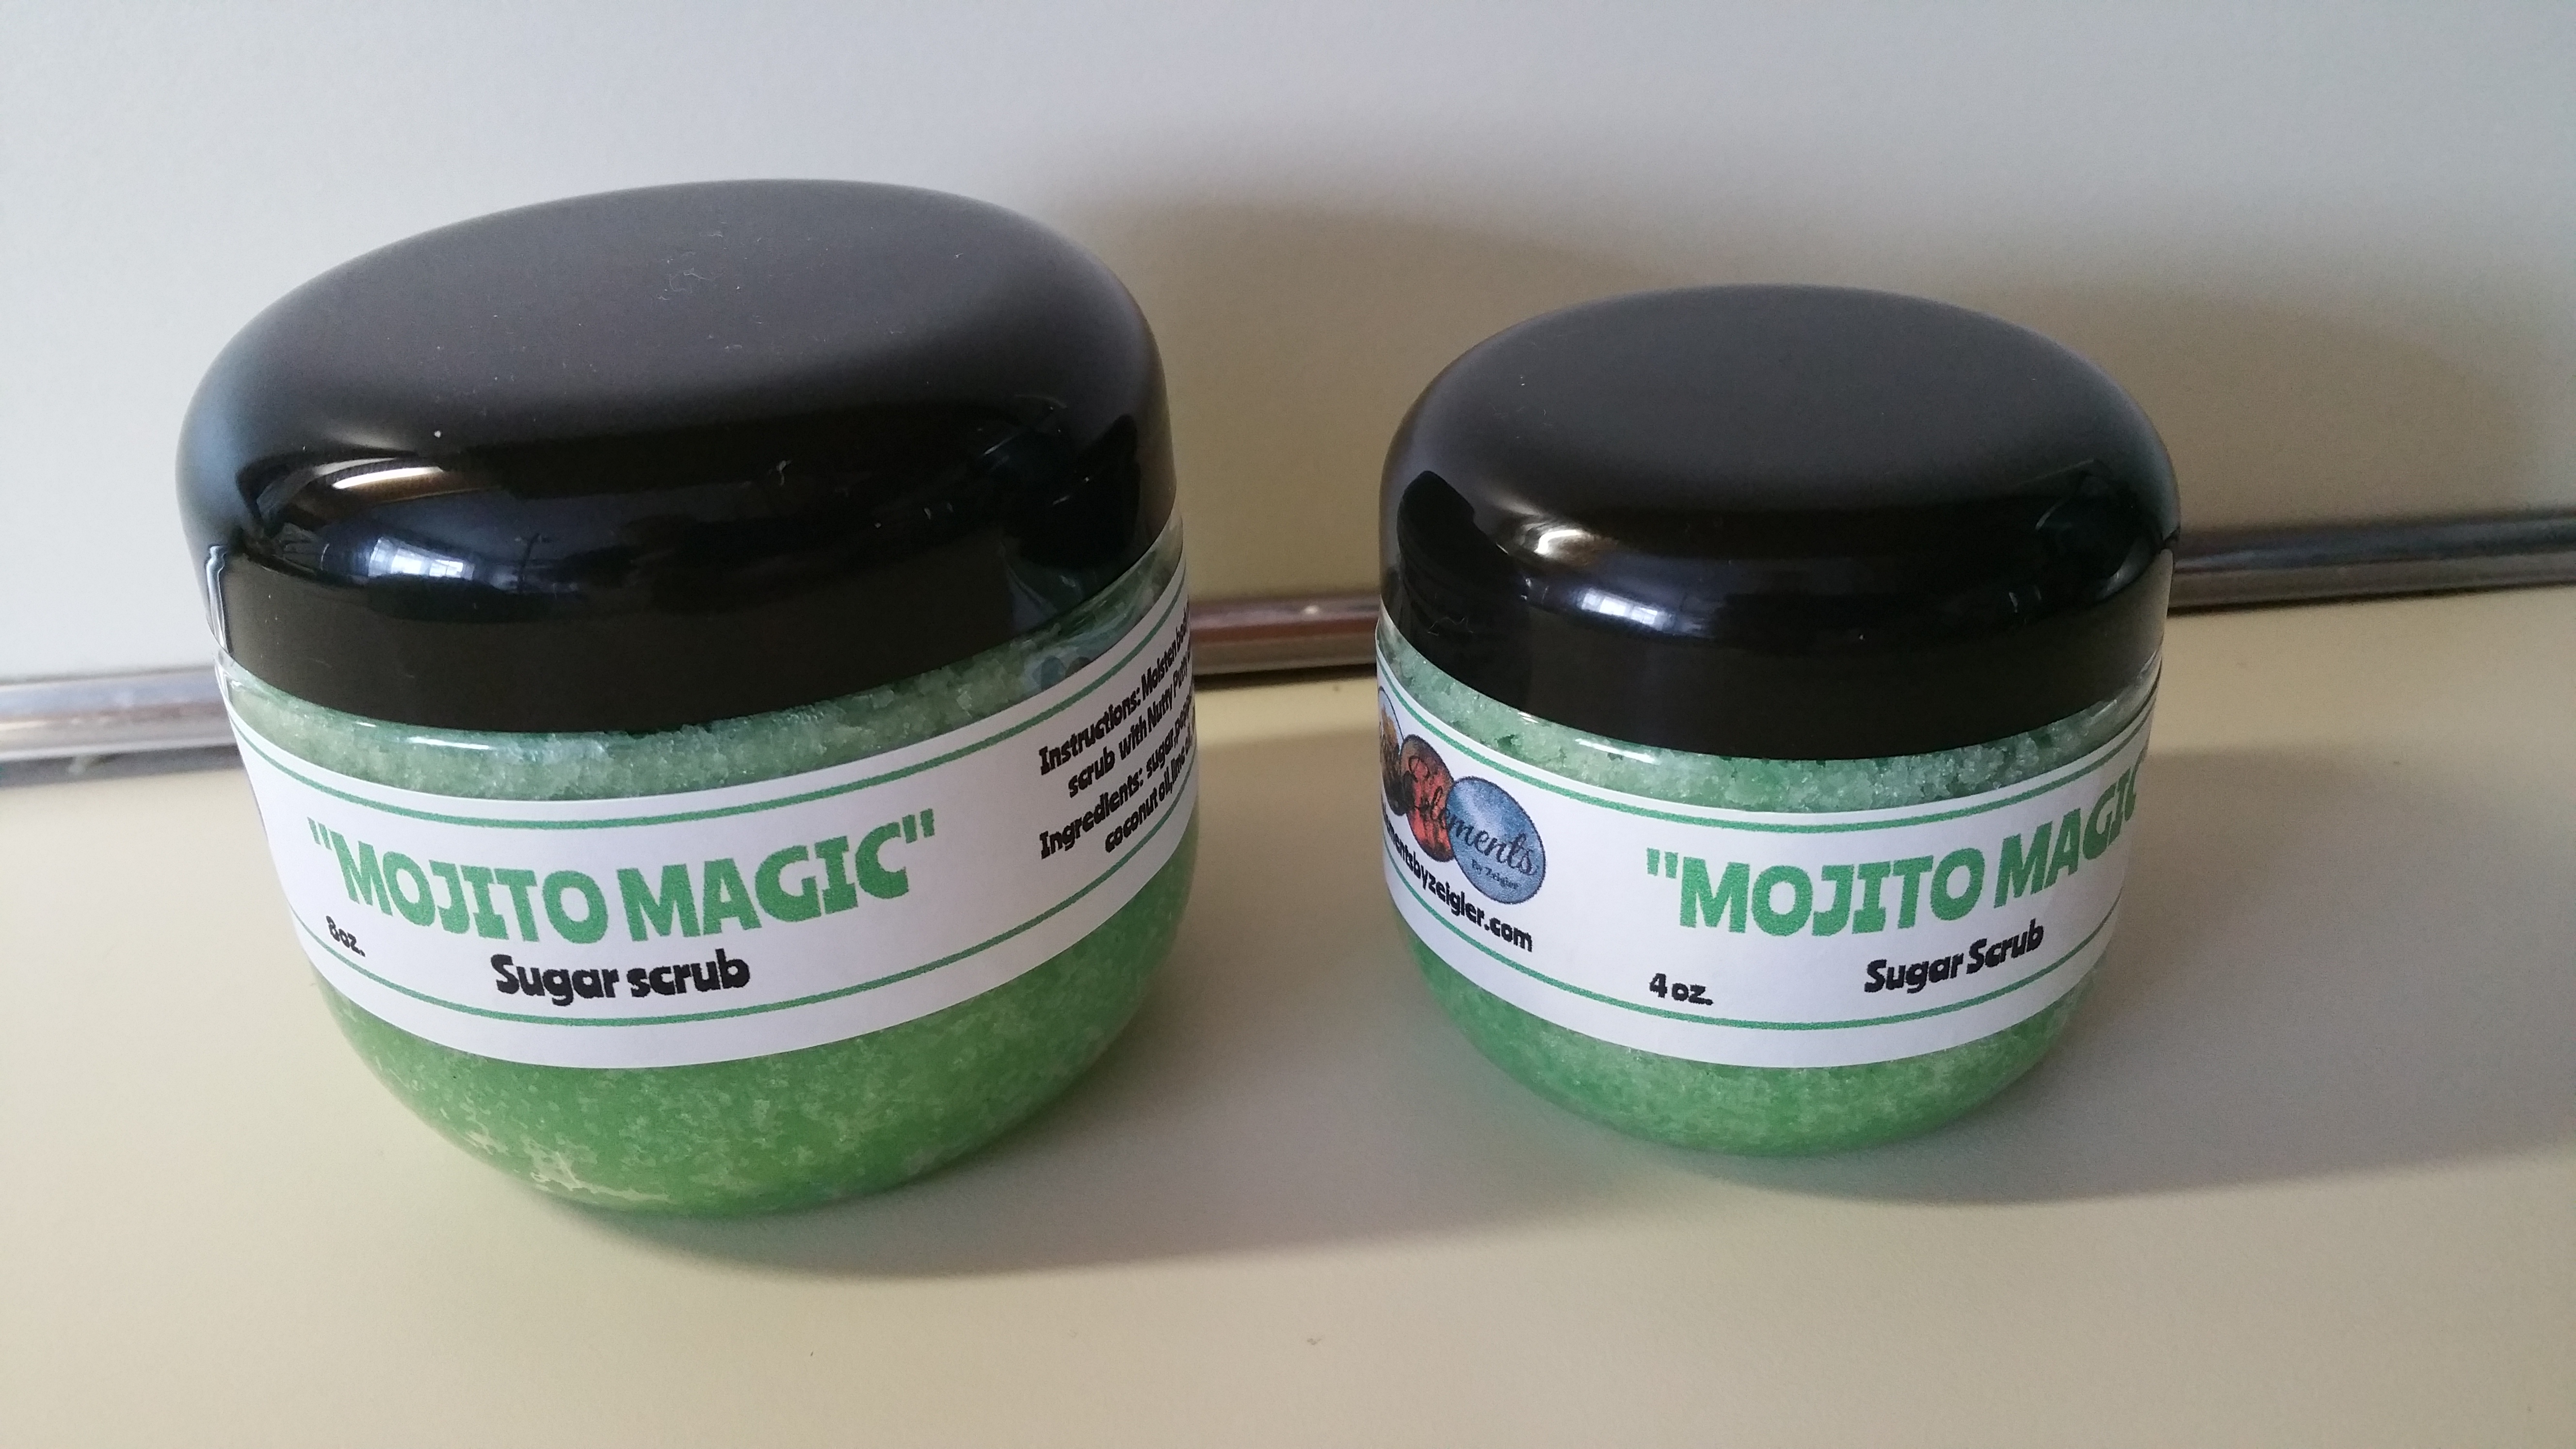 Mojito Magic sugar scrub